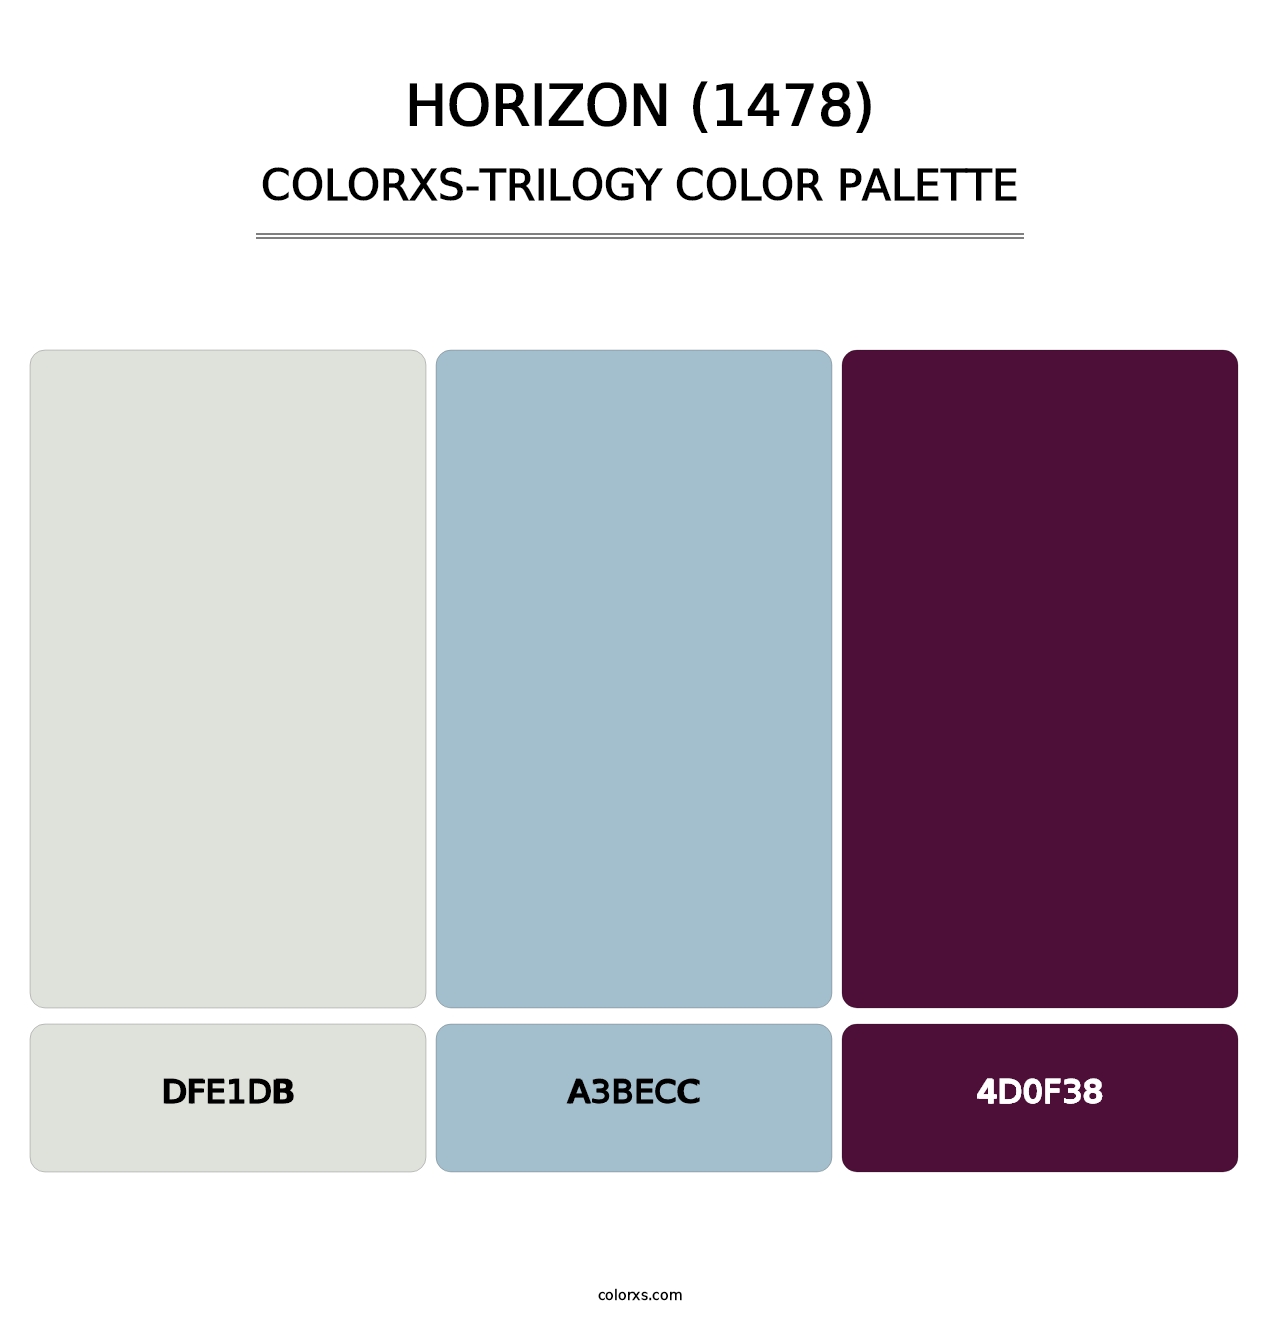 Horizon (1478) - Colorxs Trilogy Palette